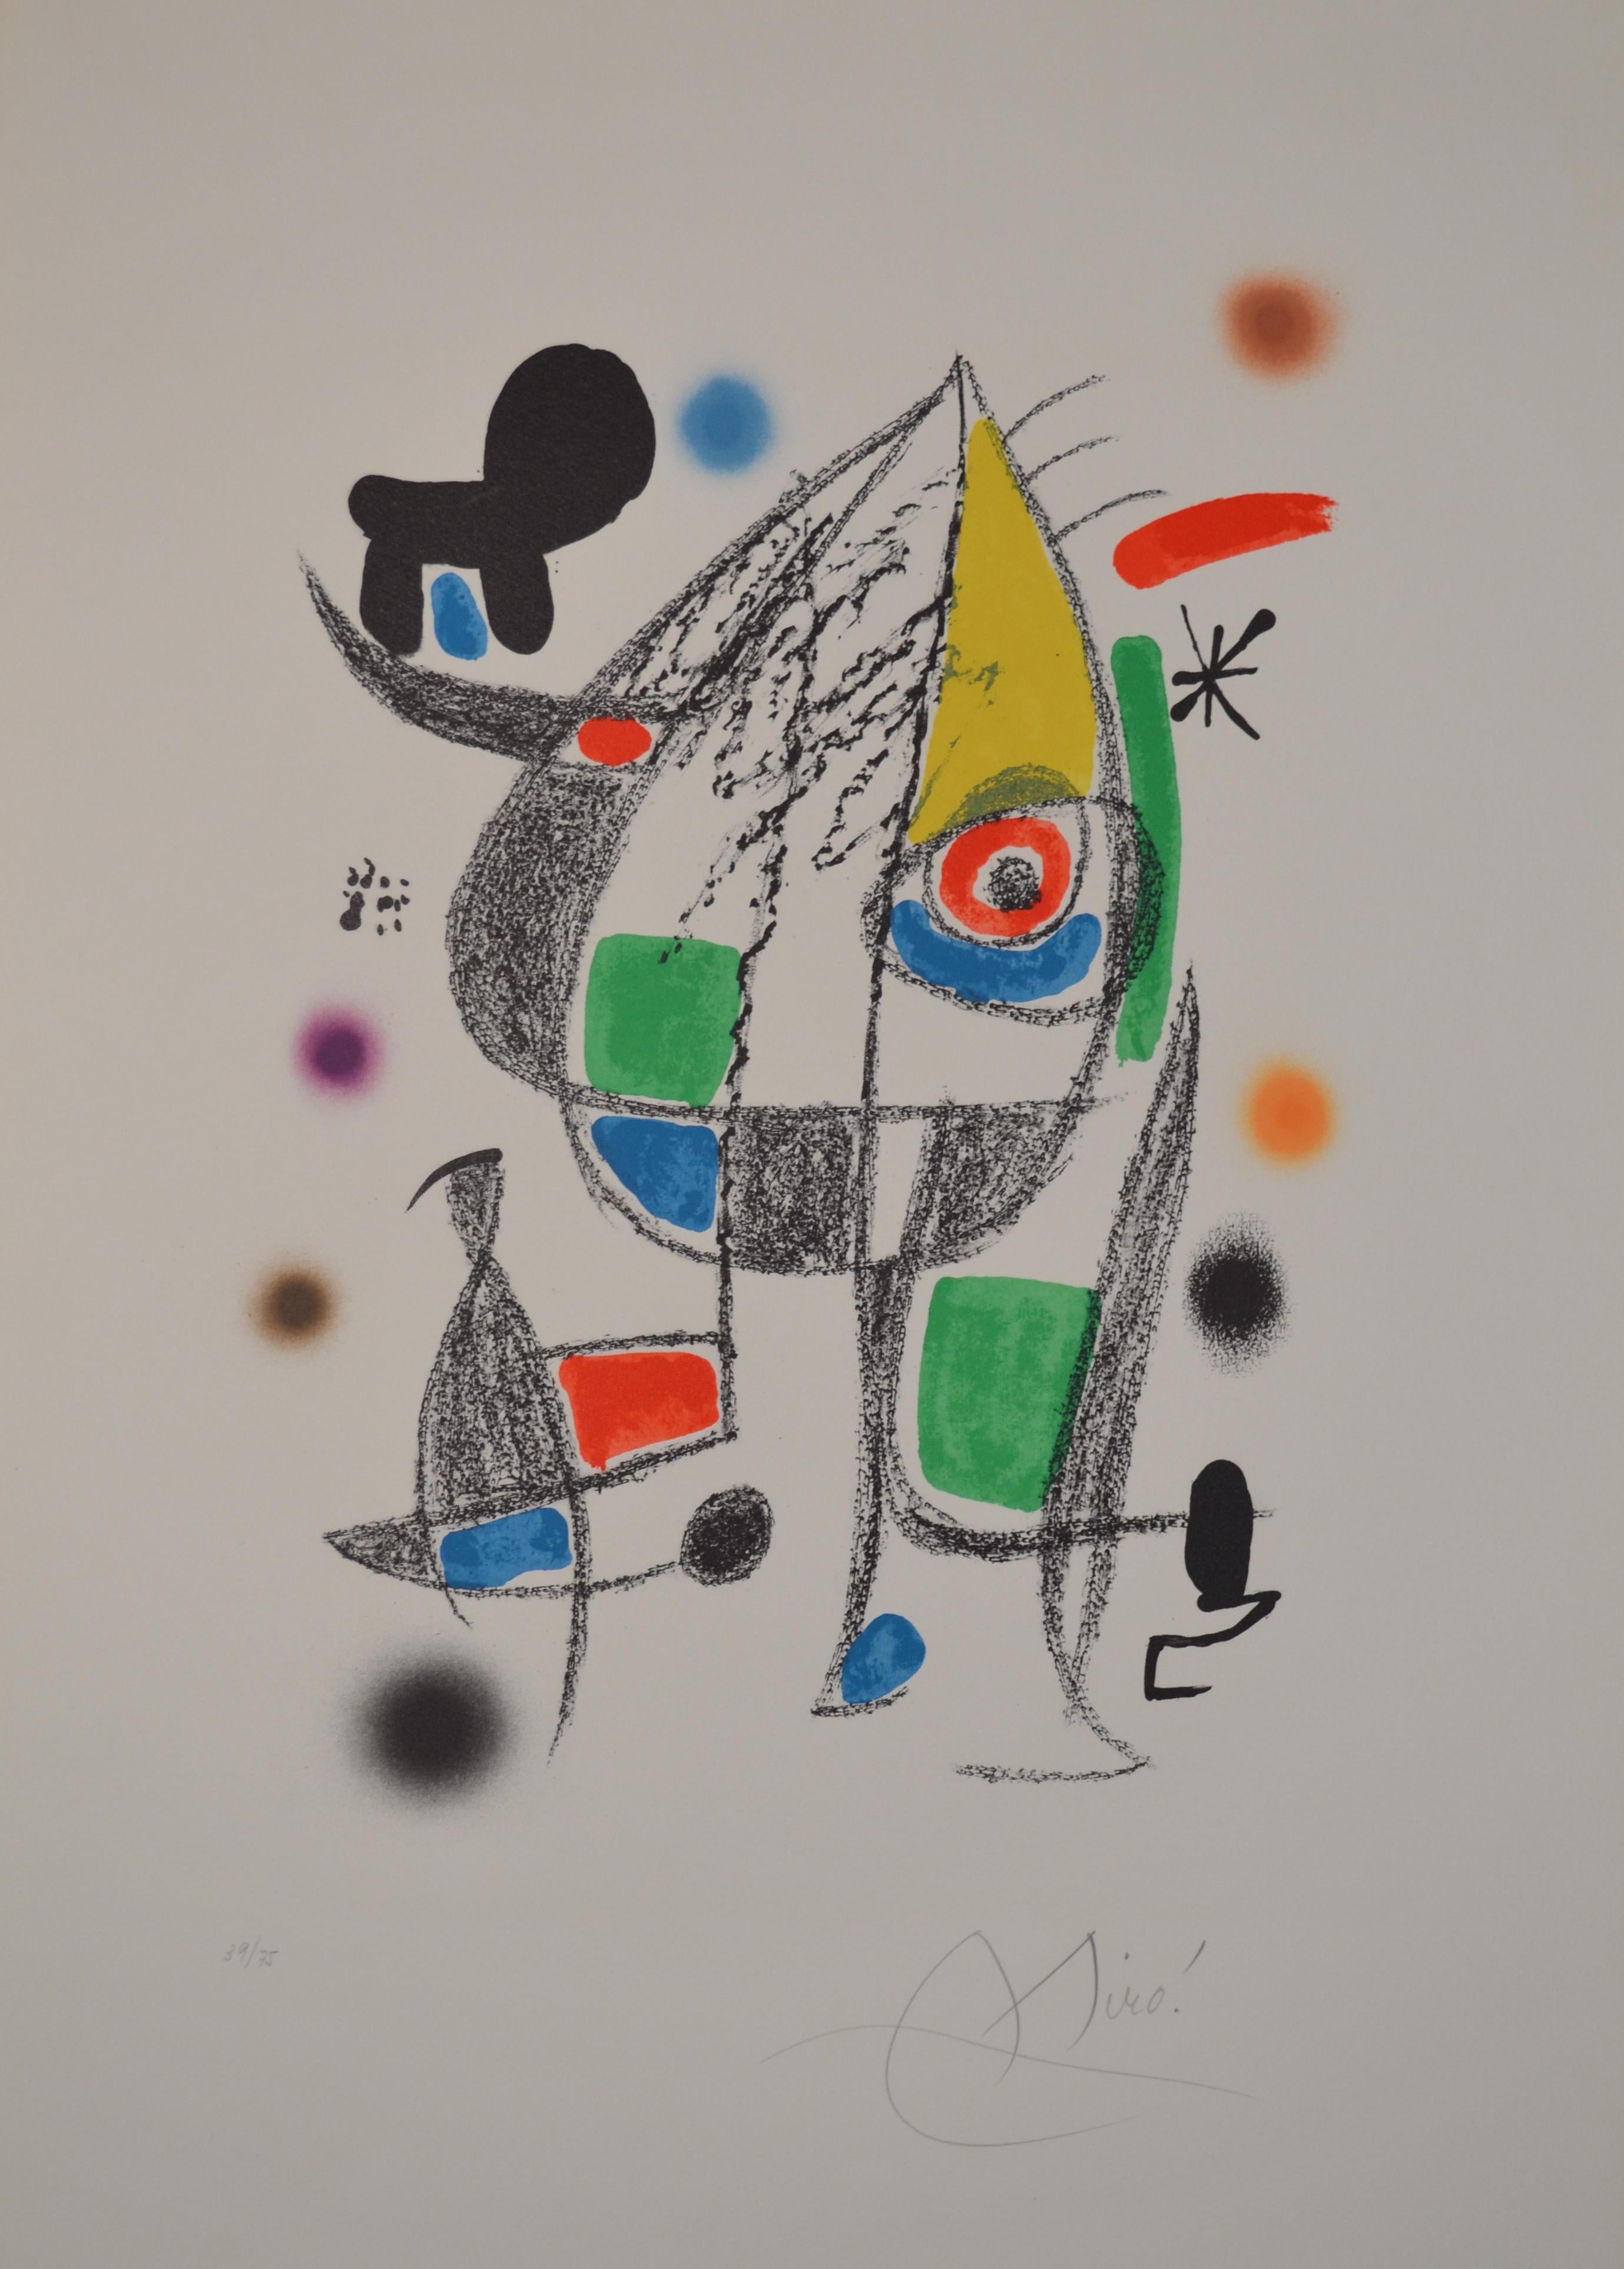 Maravillas - M1072 - Print by Joan Miró